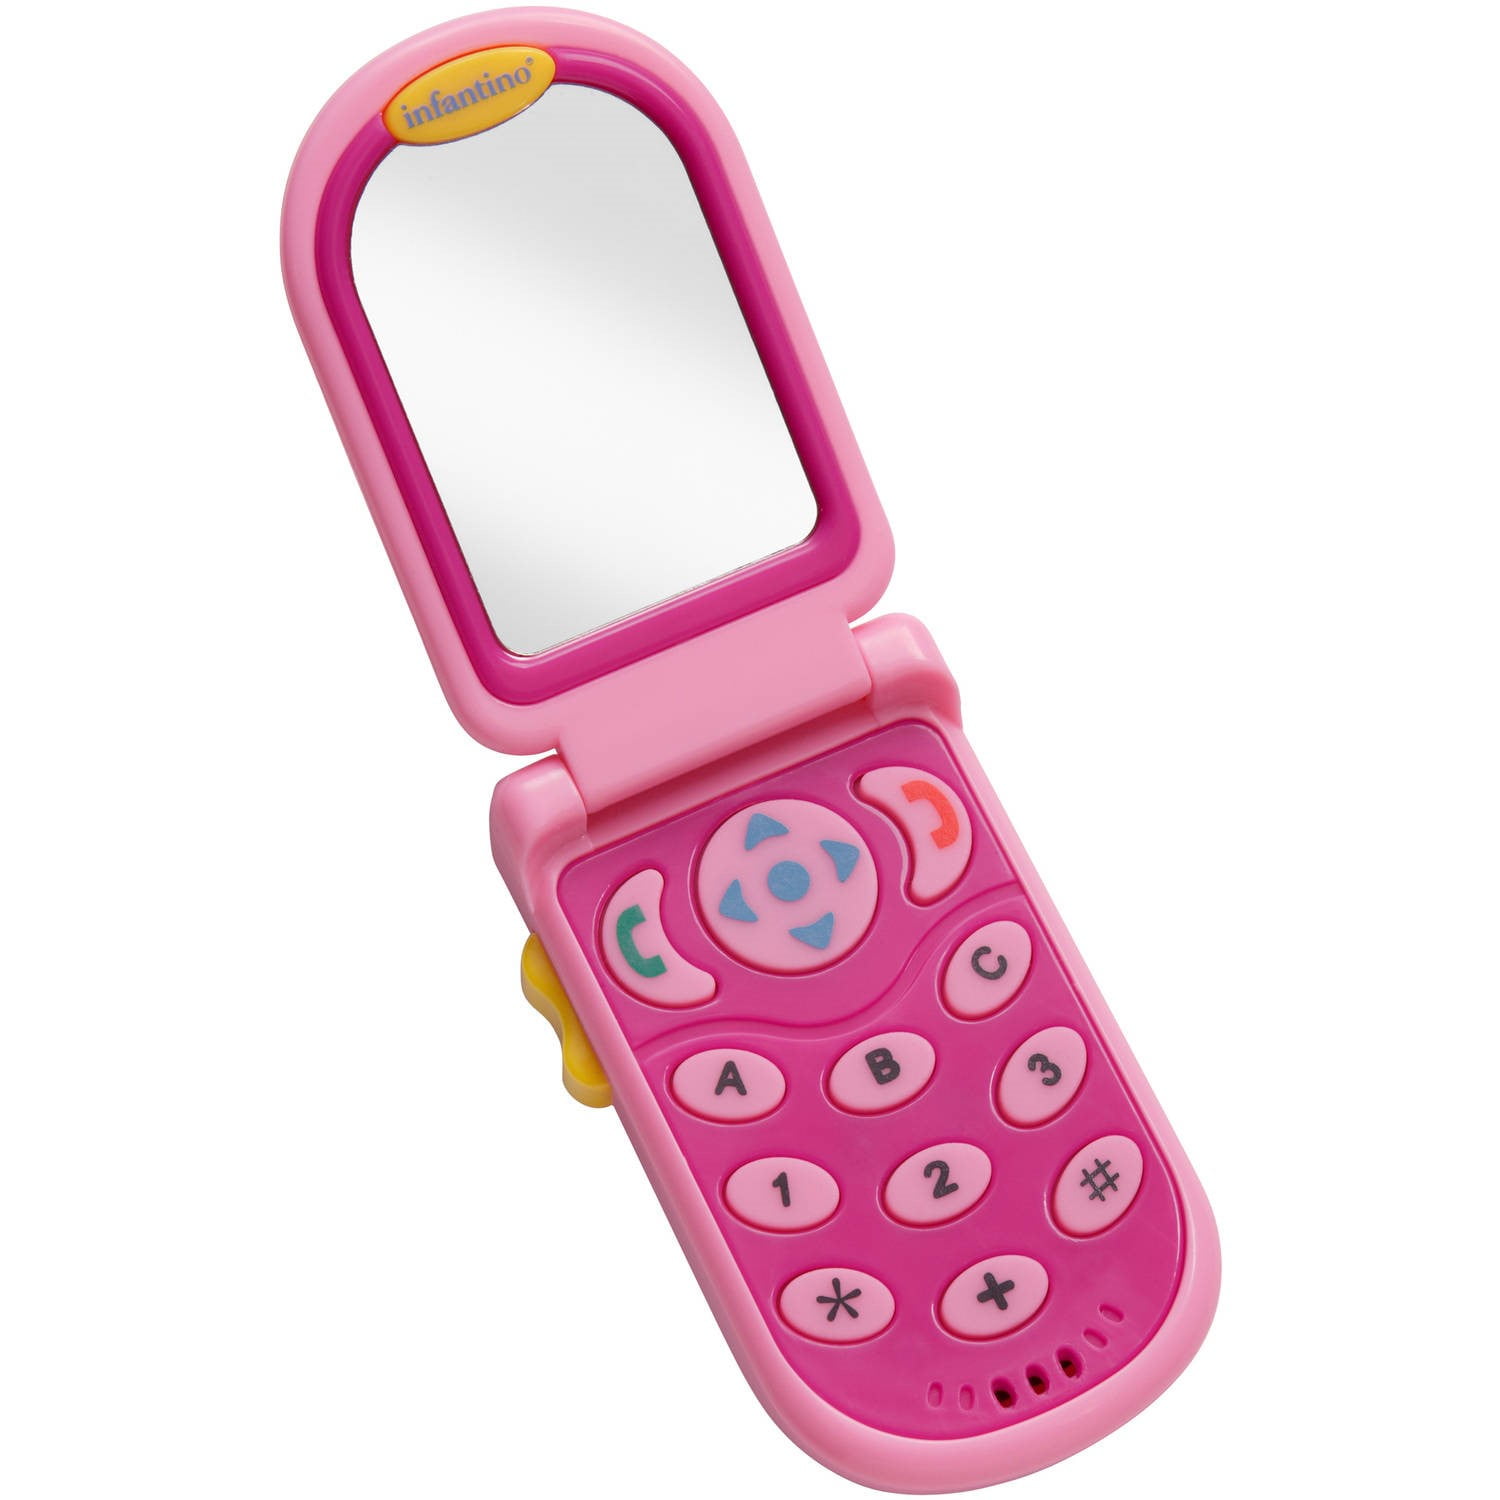 Розовый телефон раскладушка. Игрушечный мобильный телефон для девочек. Сотовый телефон для детей. Смартфон розовый игрушечный. Игрушечный сотовый телефон для детей.